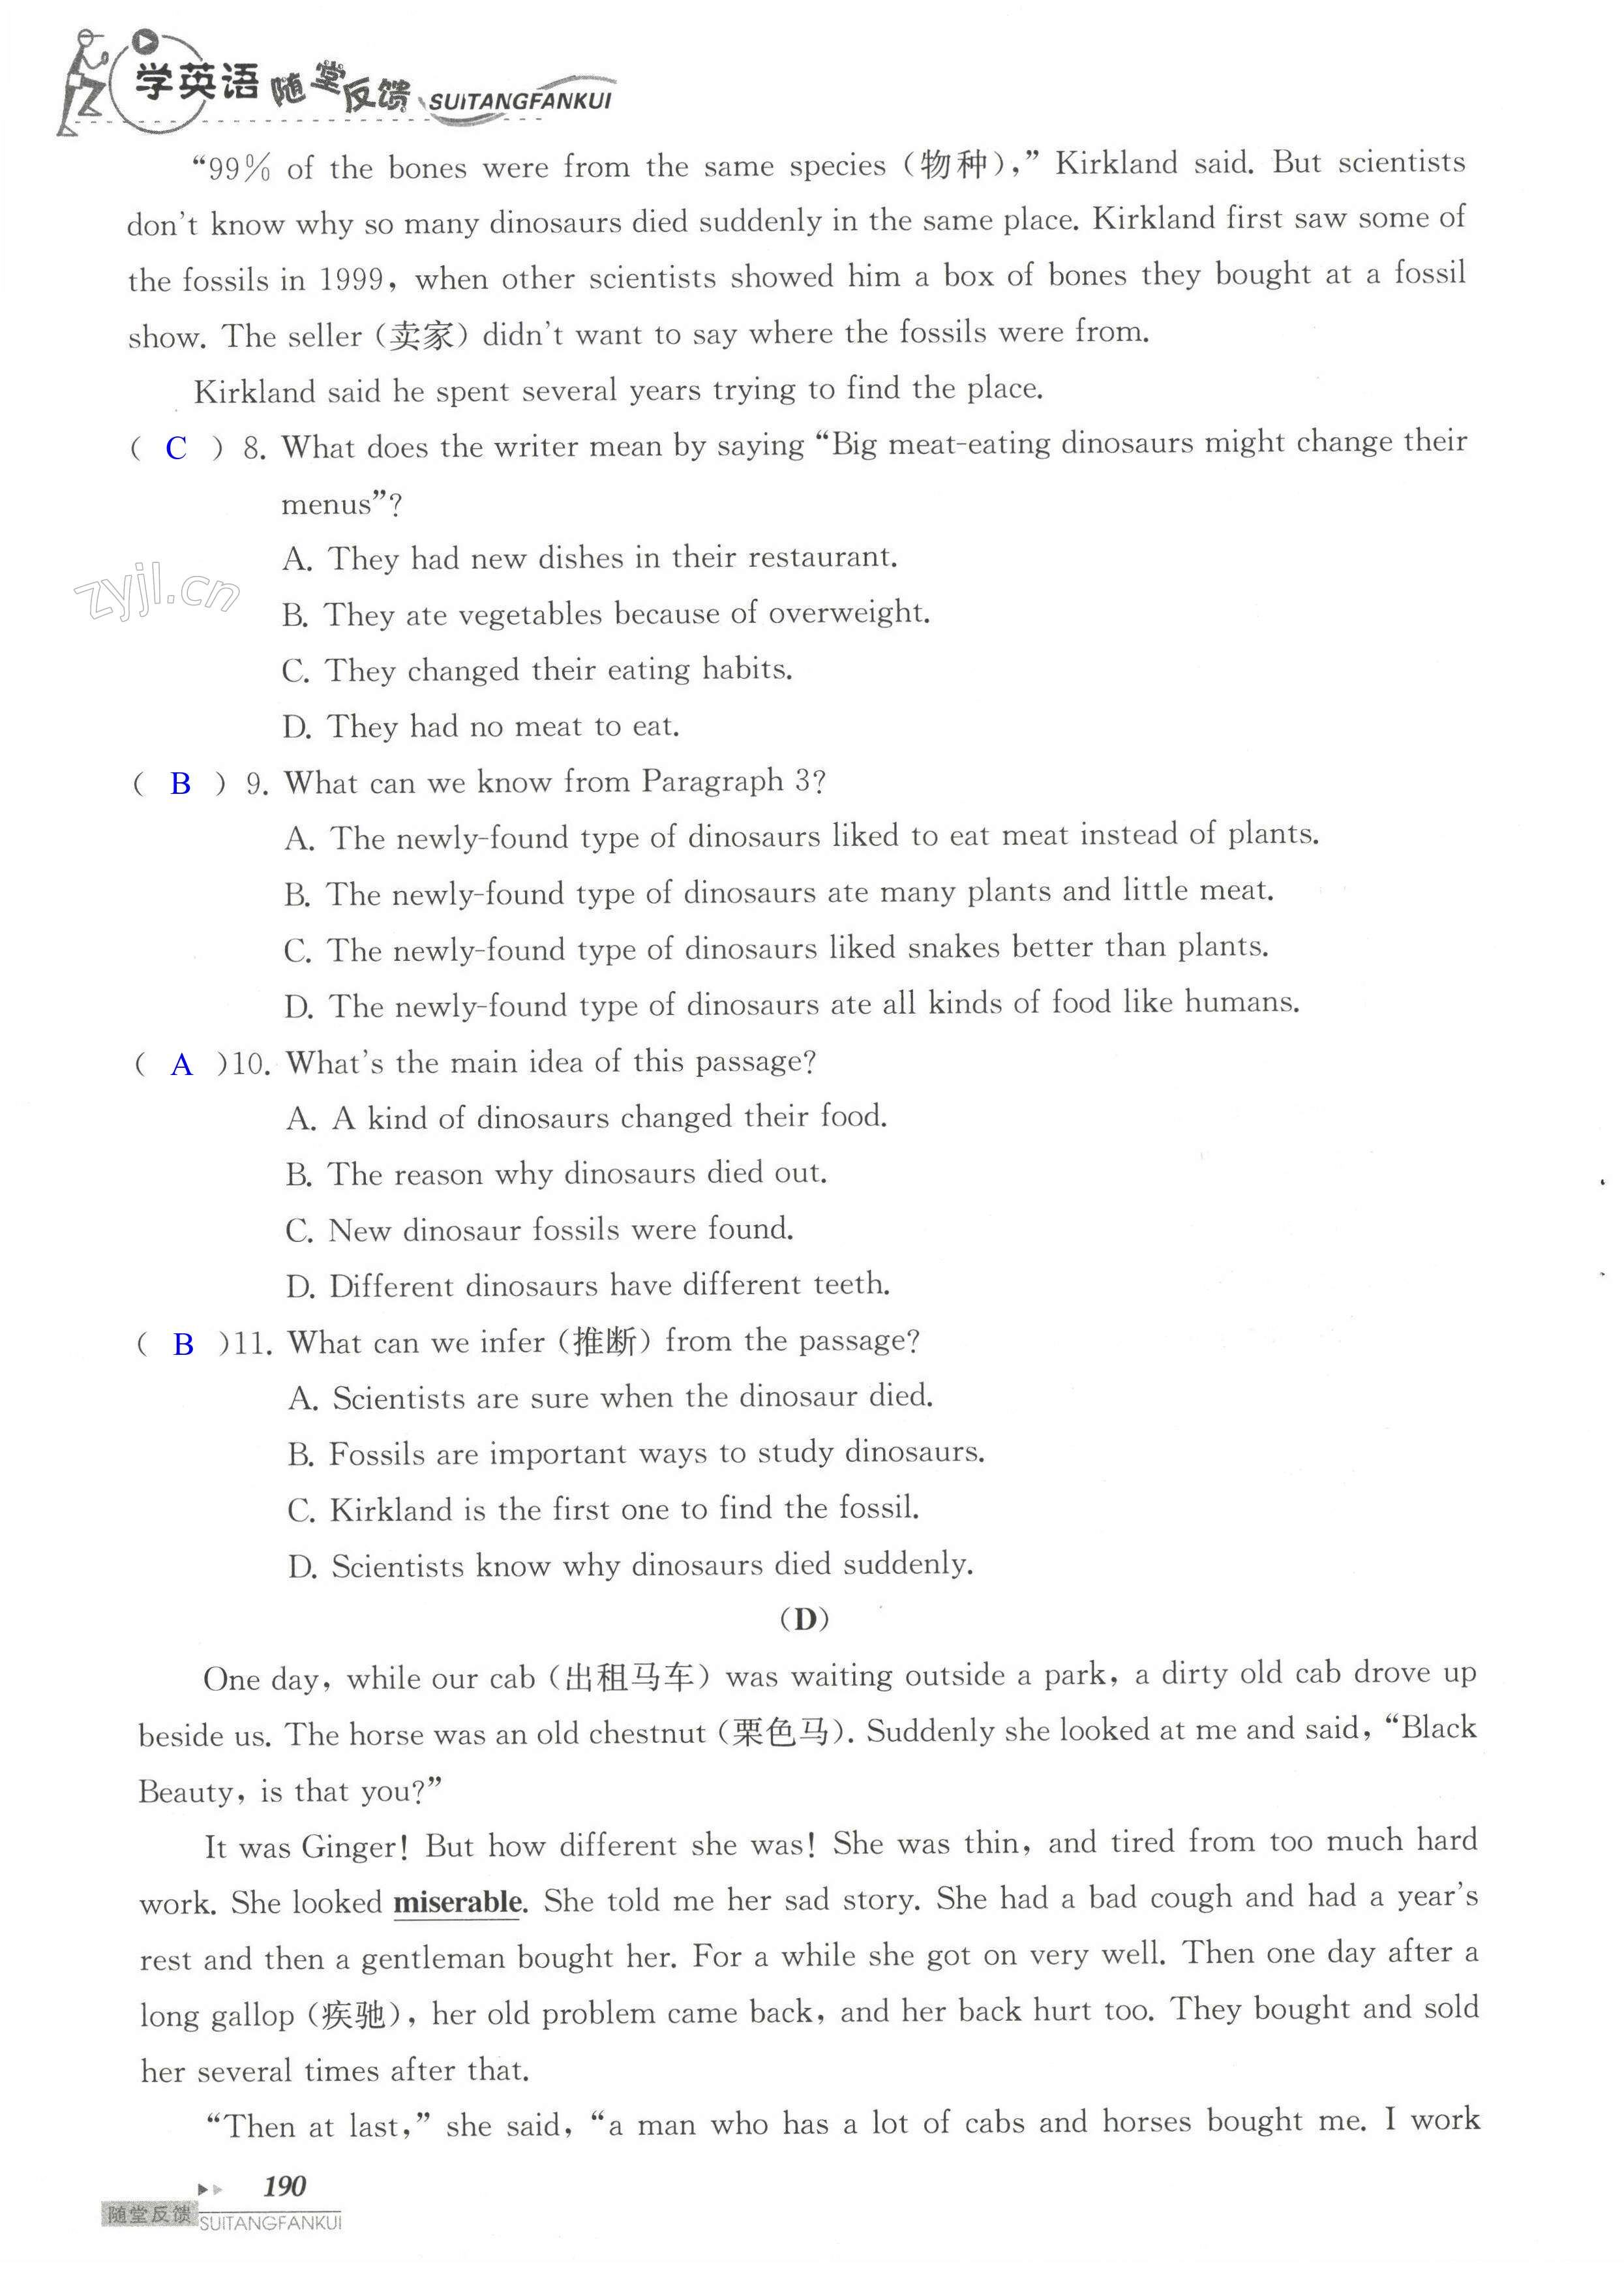 单元综合测试卷 Test for Unit 5 of 8A - 第190页